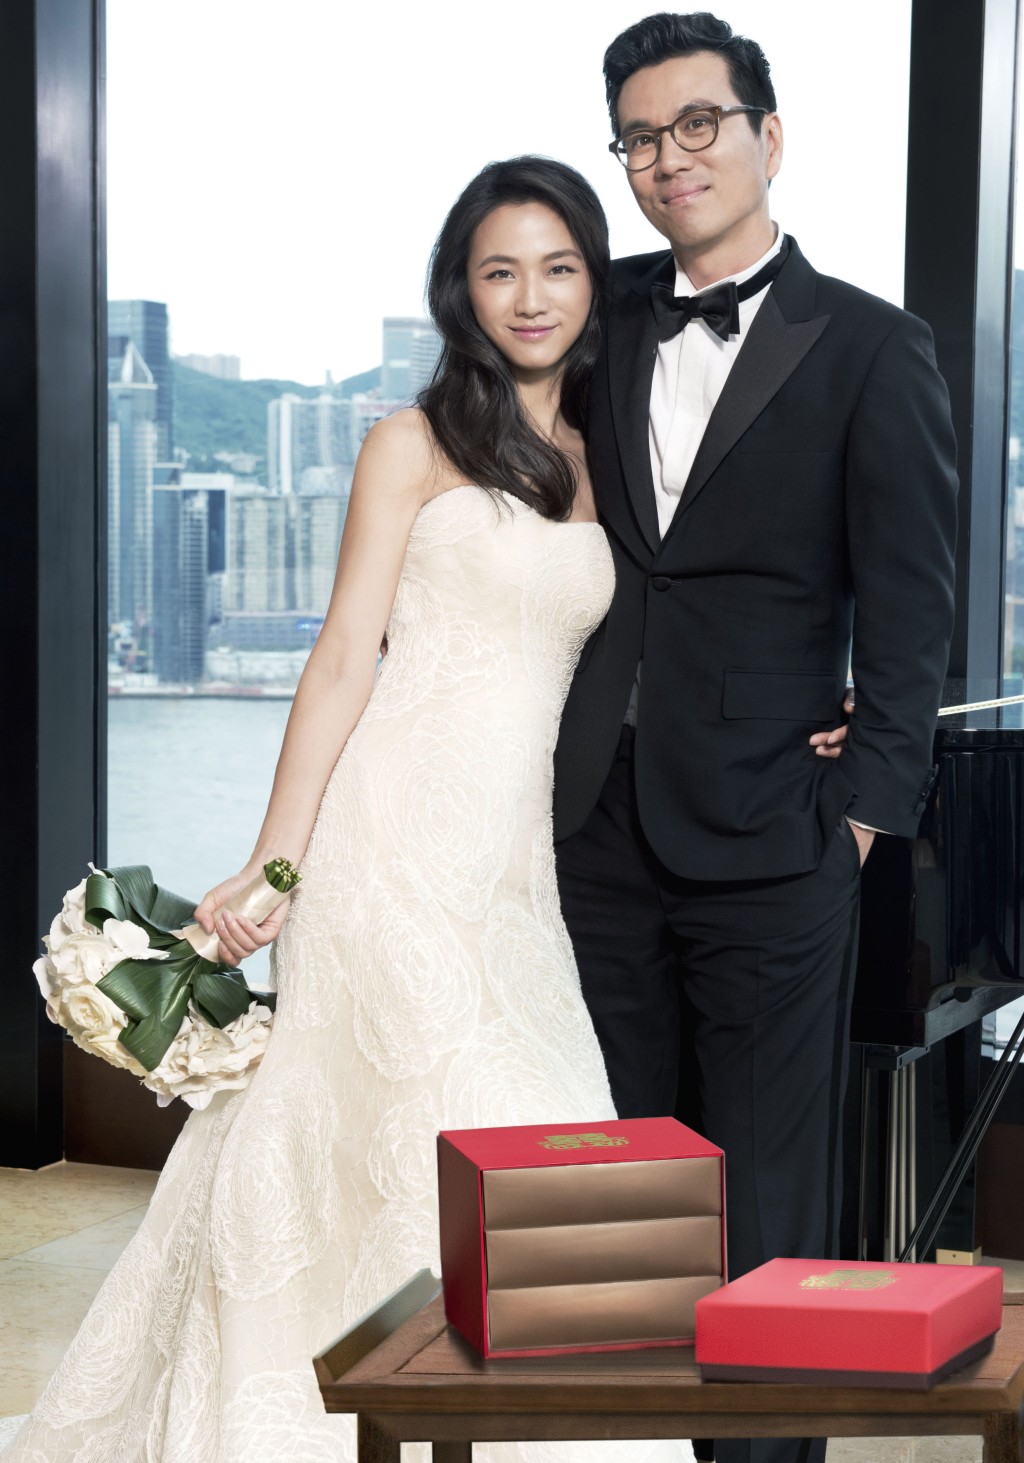 湯唯於2014年下嫁韓國導演金泰勇。